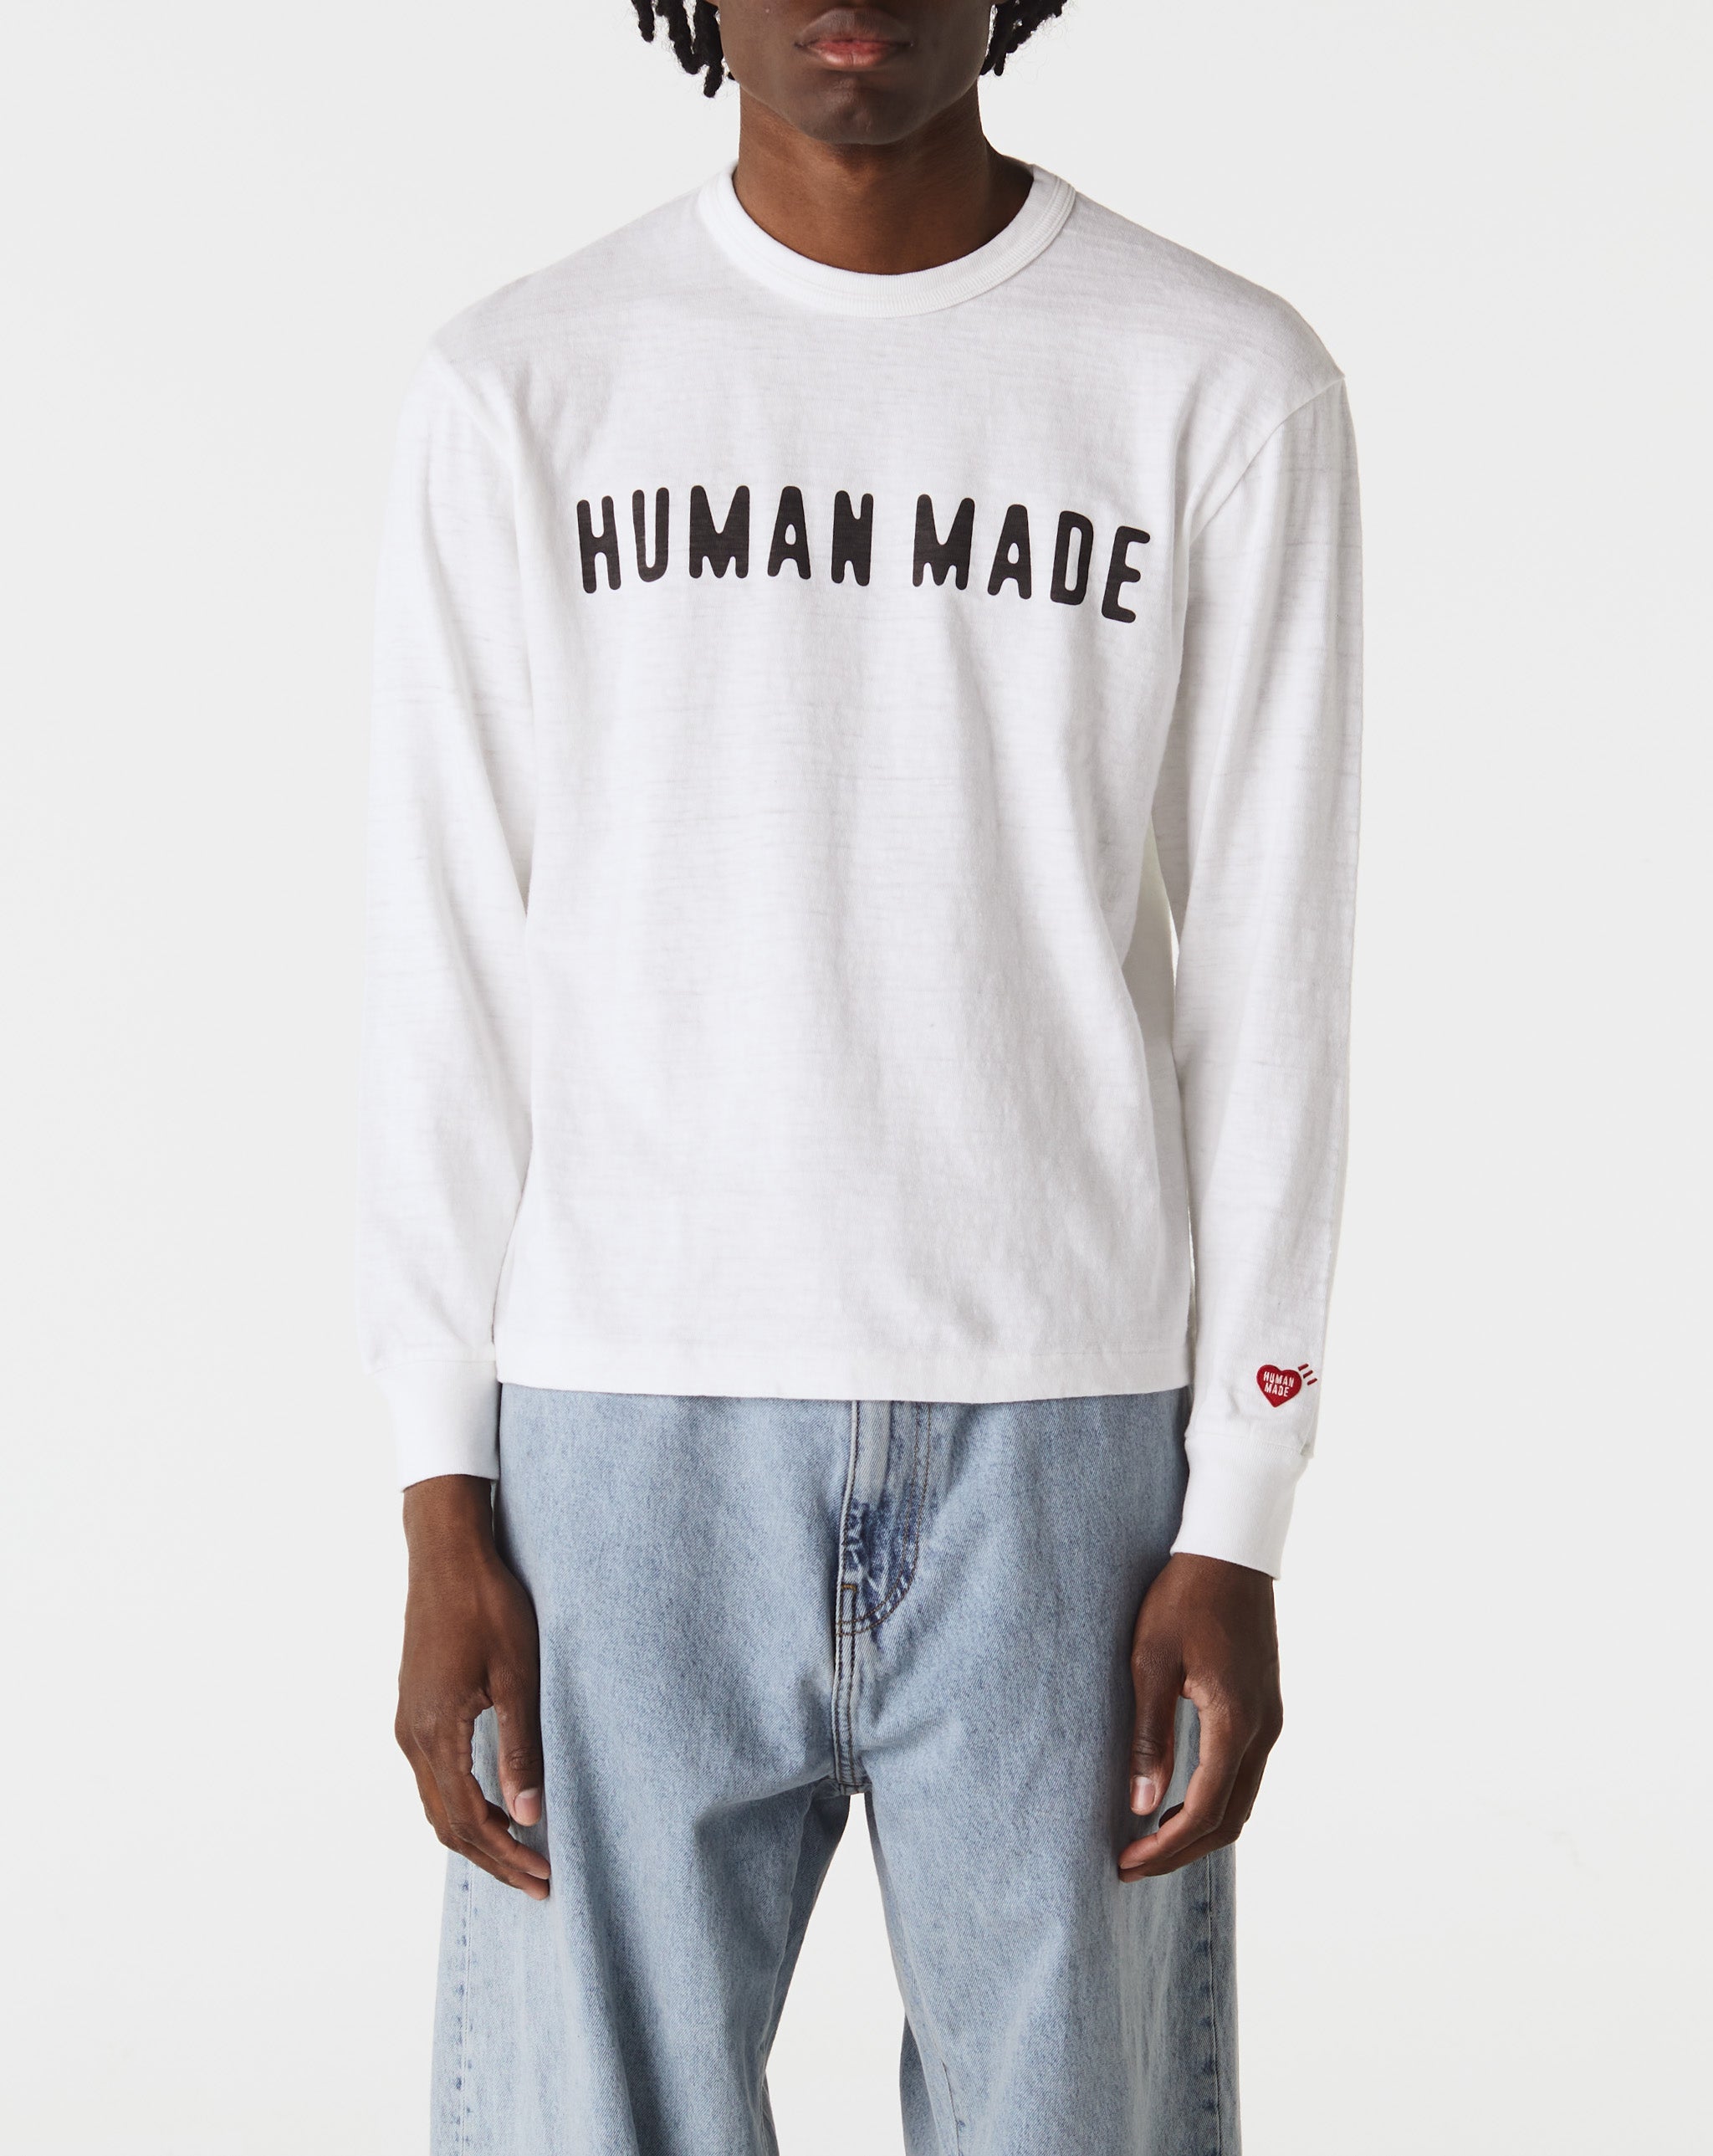 Human Made Dolce & Gabbana Carretto Dg Love T-shirt  - Cheap Urlfreeze Jordan outlet